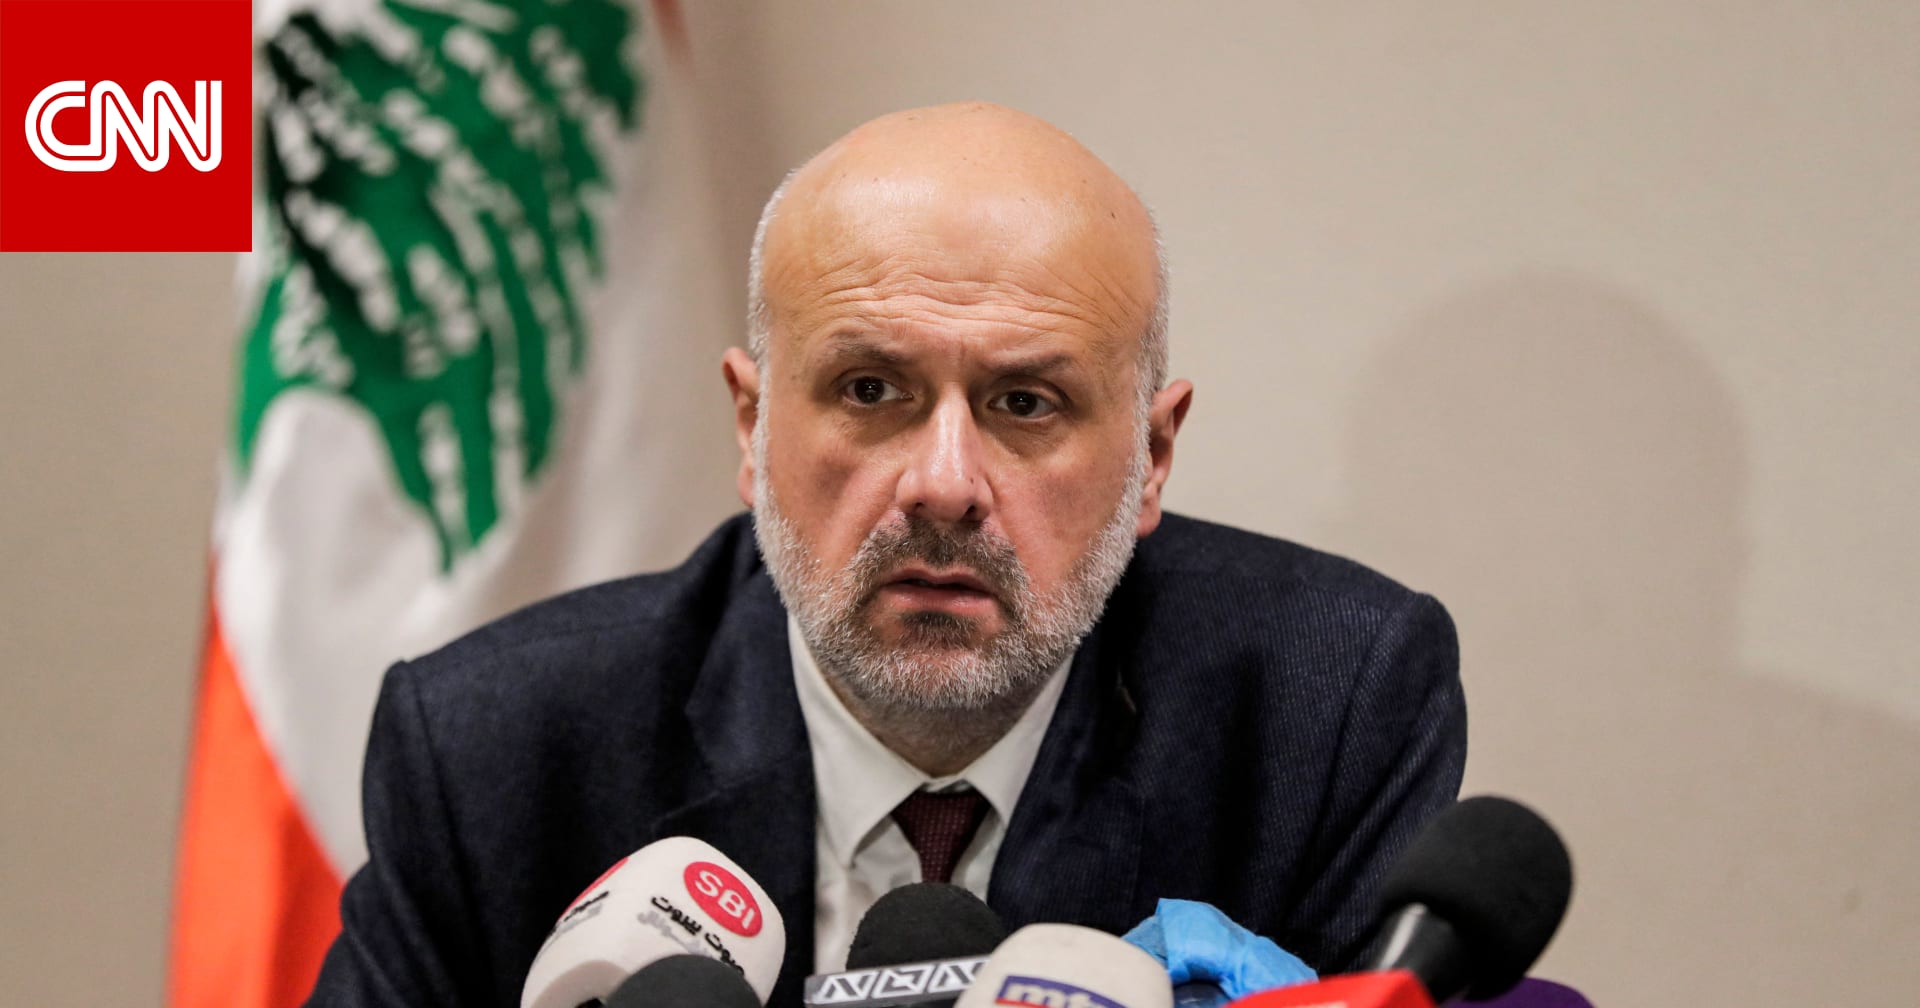 وزير الداخلية اللبناني يعلن إحباط تهريب 10 ملايين حبة كبتاغون إلى السعودية